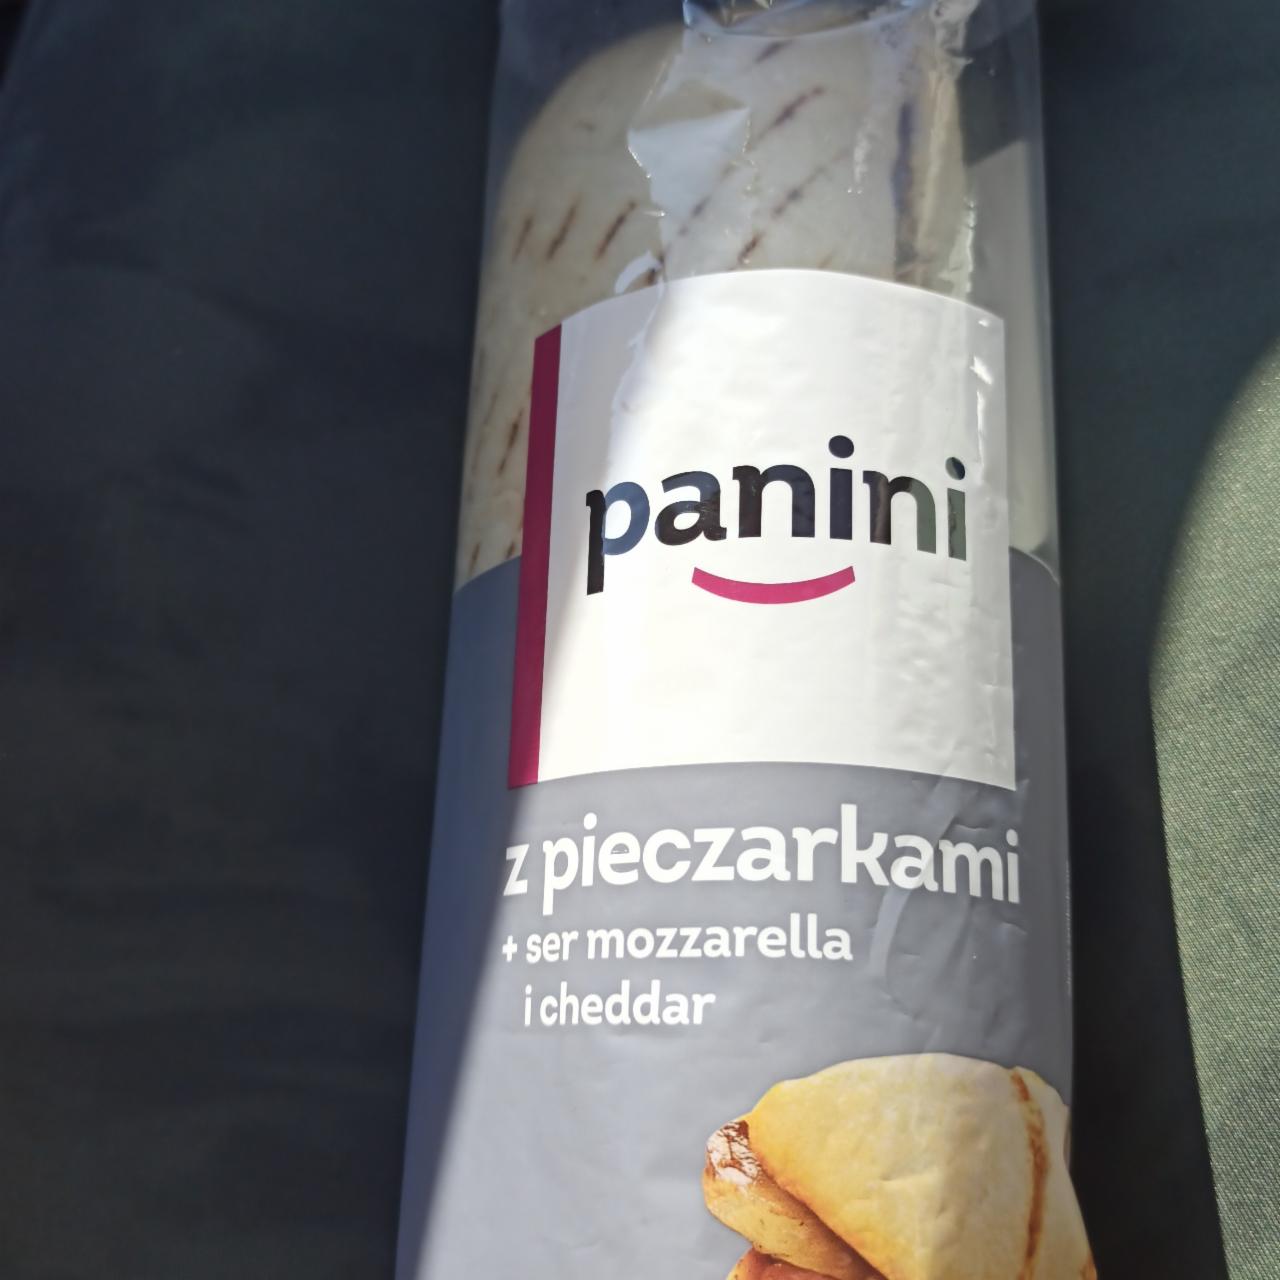 Zdjęcia - Panini z pieczarkami ser mozzarella i cheddar Żabka